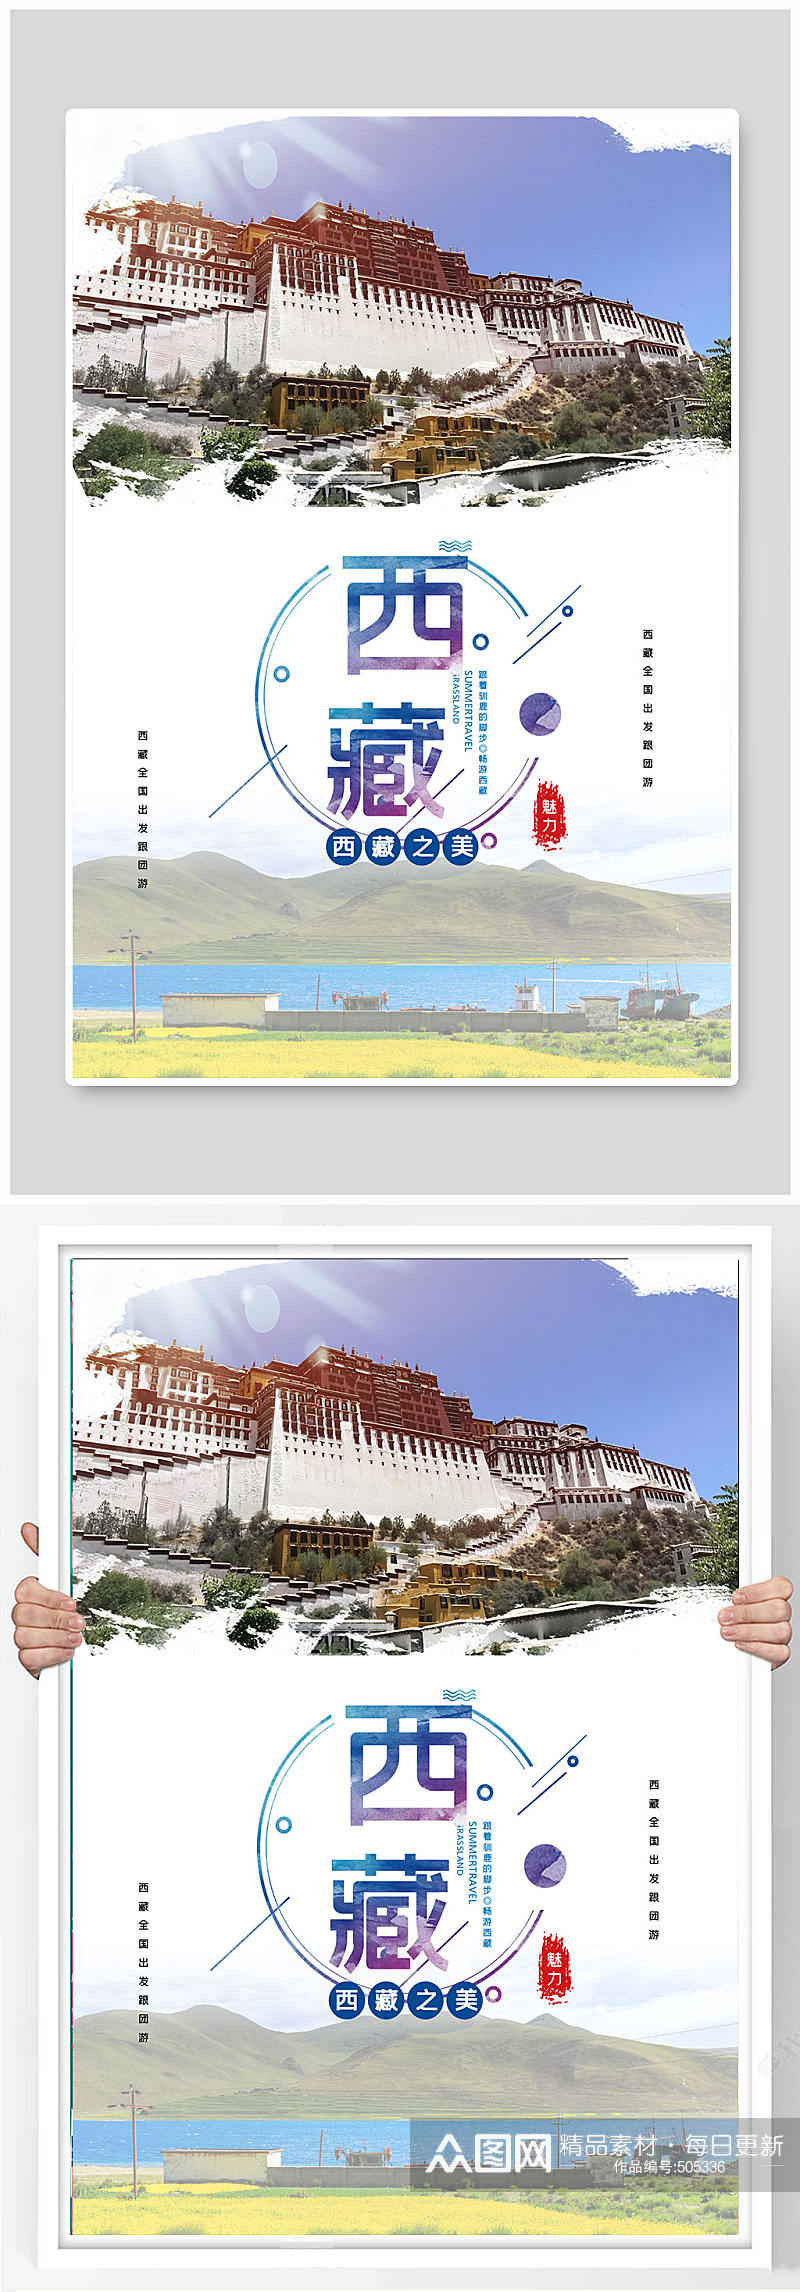 大气西藏旅游海报素材